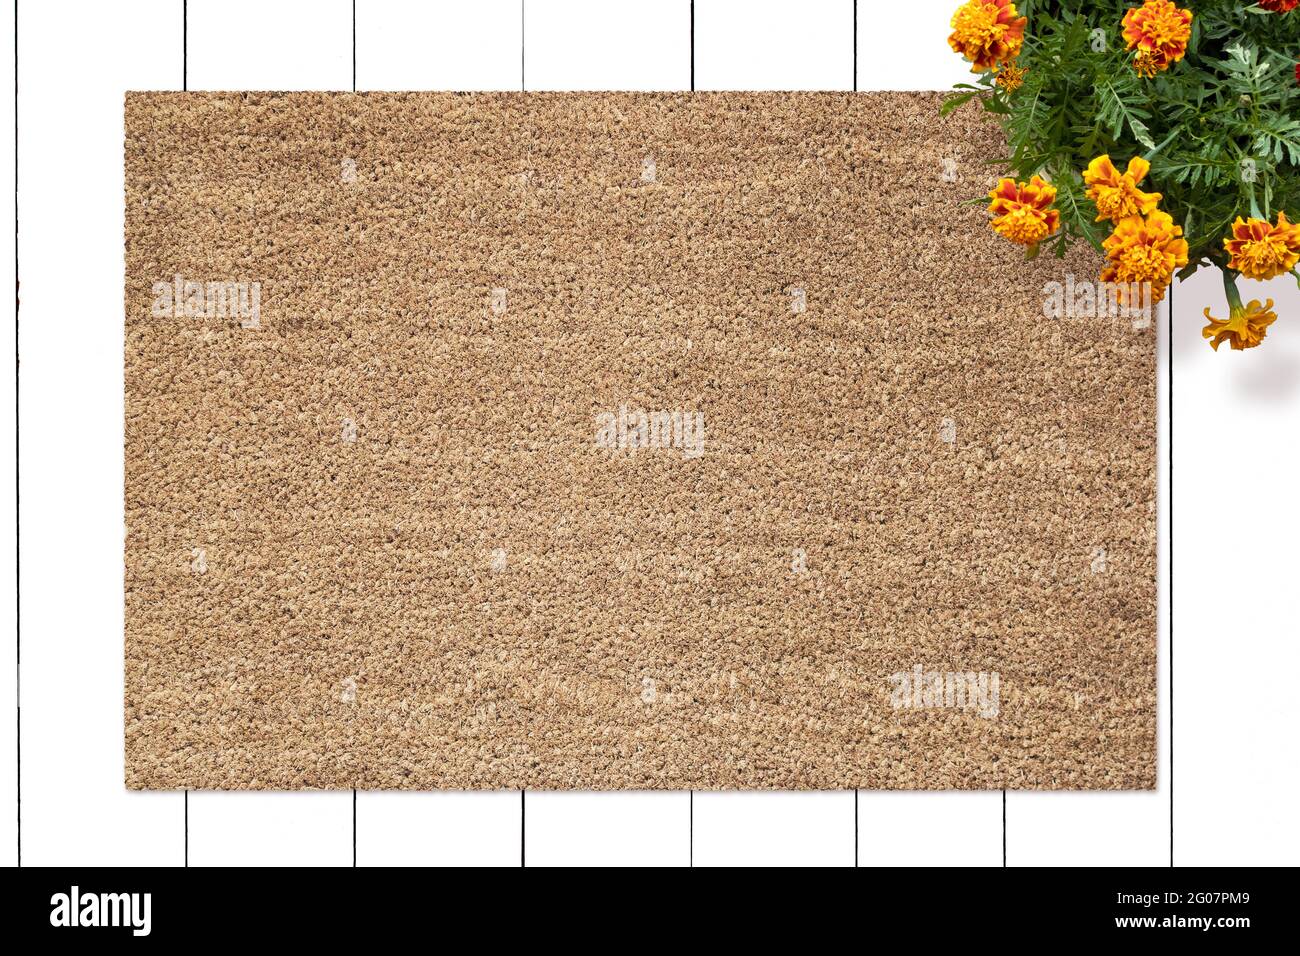 Mockup of Coir Doormat on wooden floor with flowers Stock Photo